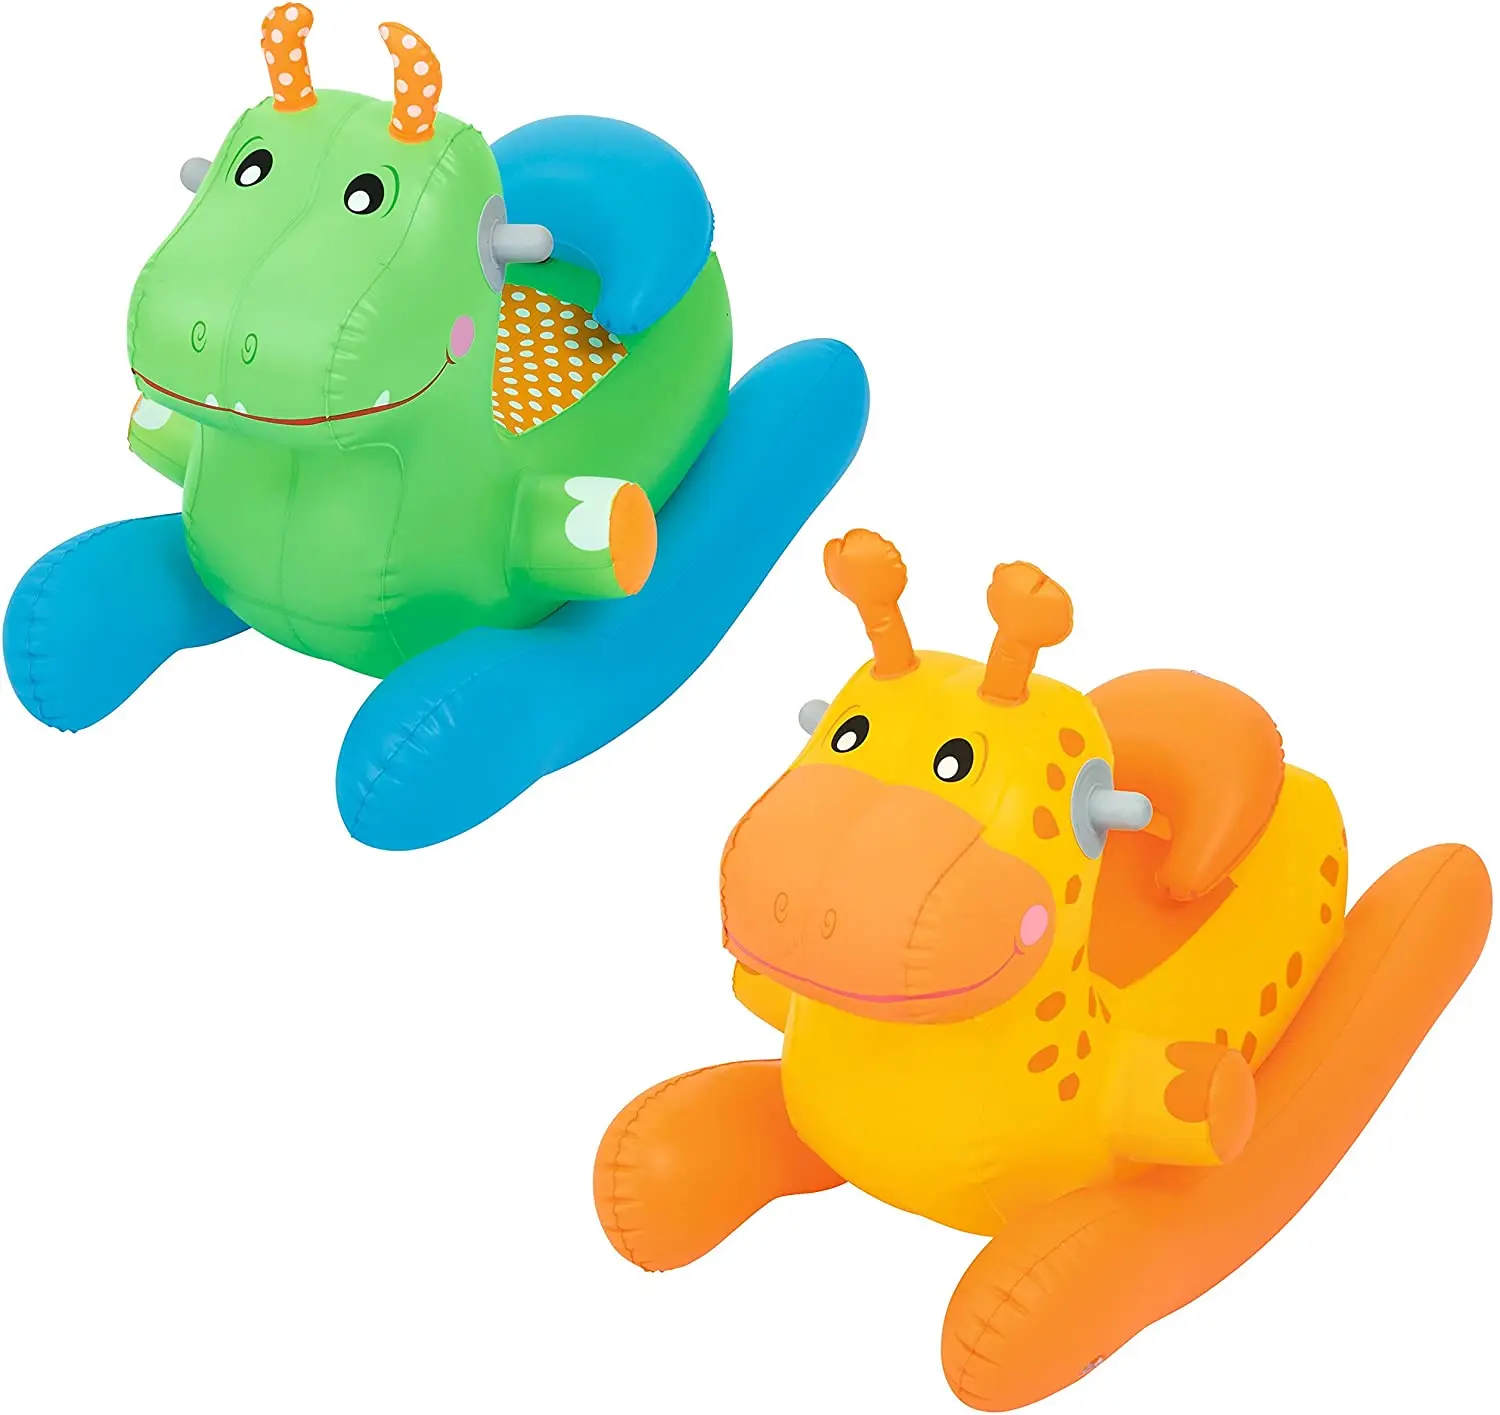 52220 Kids Fun Green Orange Children Animal Rocking Inflatable Horse Toy